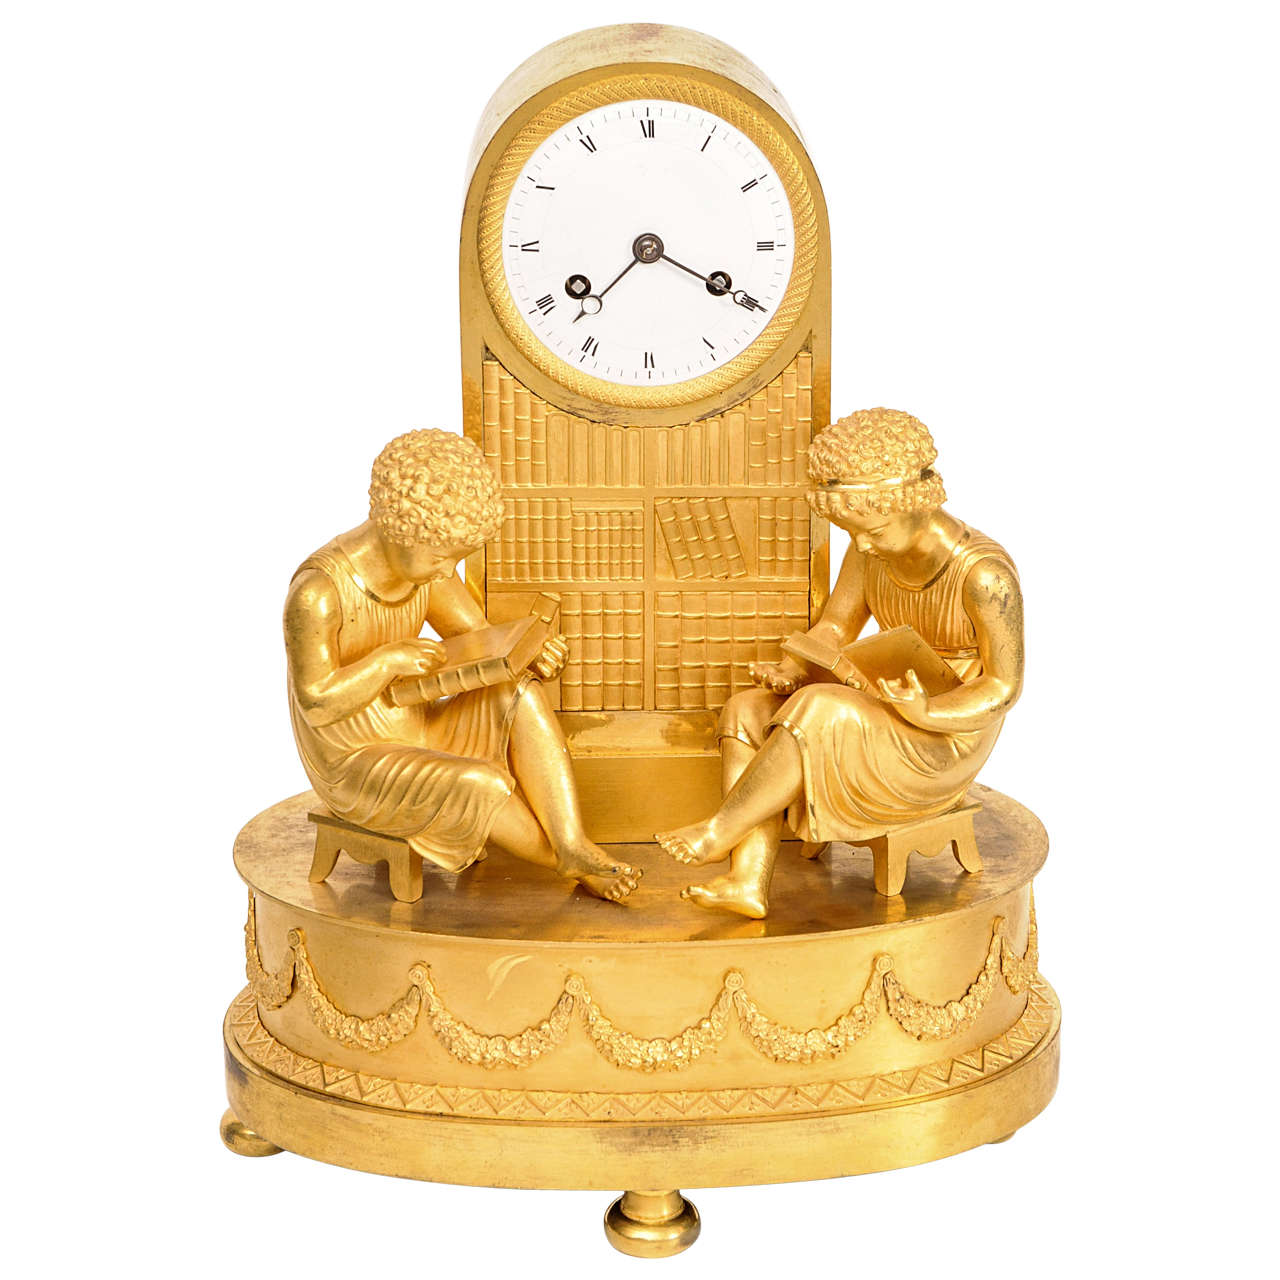 Attractive Empire Ormolu Mantel Clock circa 1820